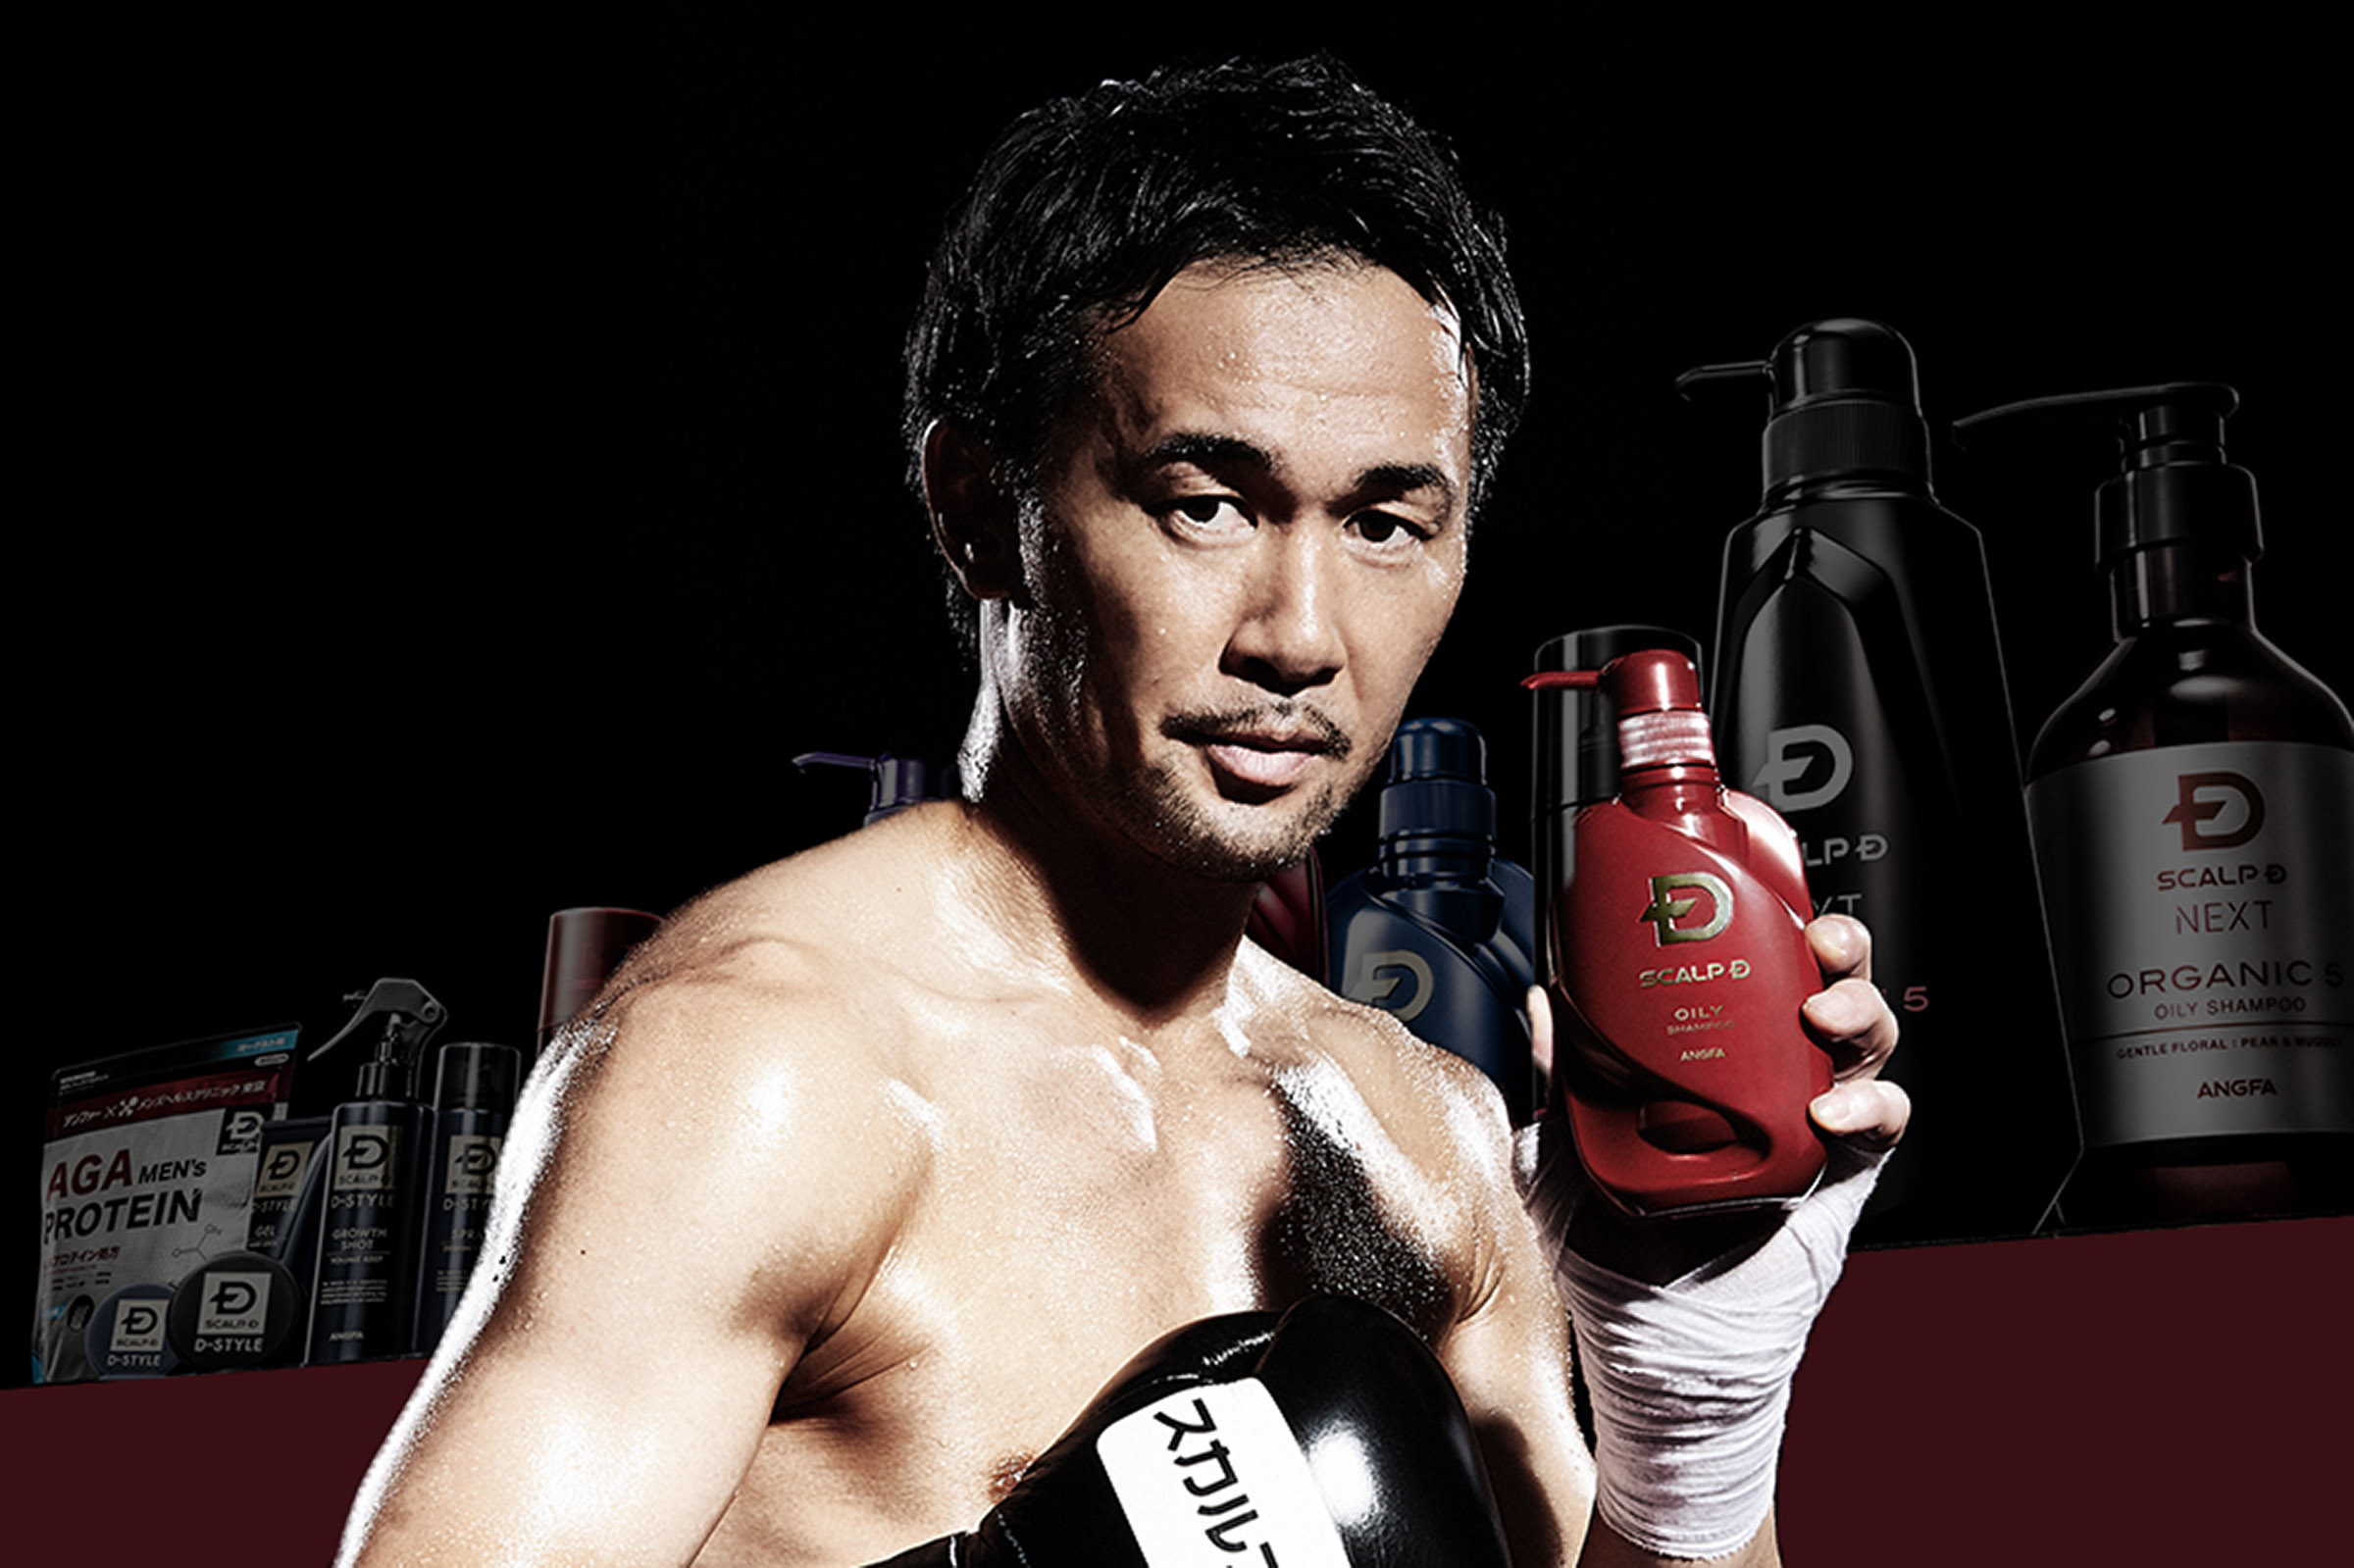 Angfa / アンファー campaign poster staring Shinsuke Yamanaka /山中慎介（WBC Boxing Champion)